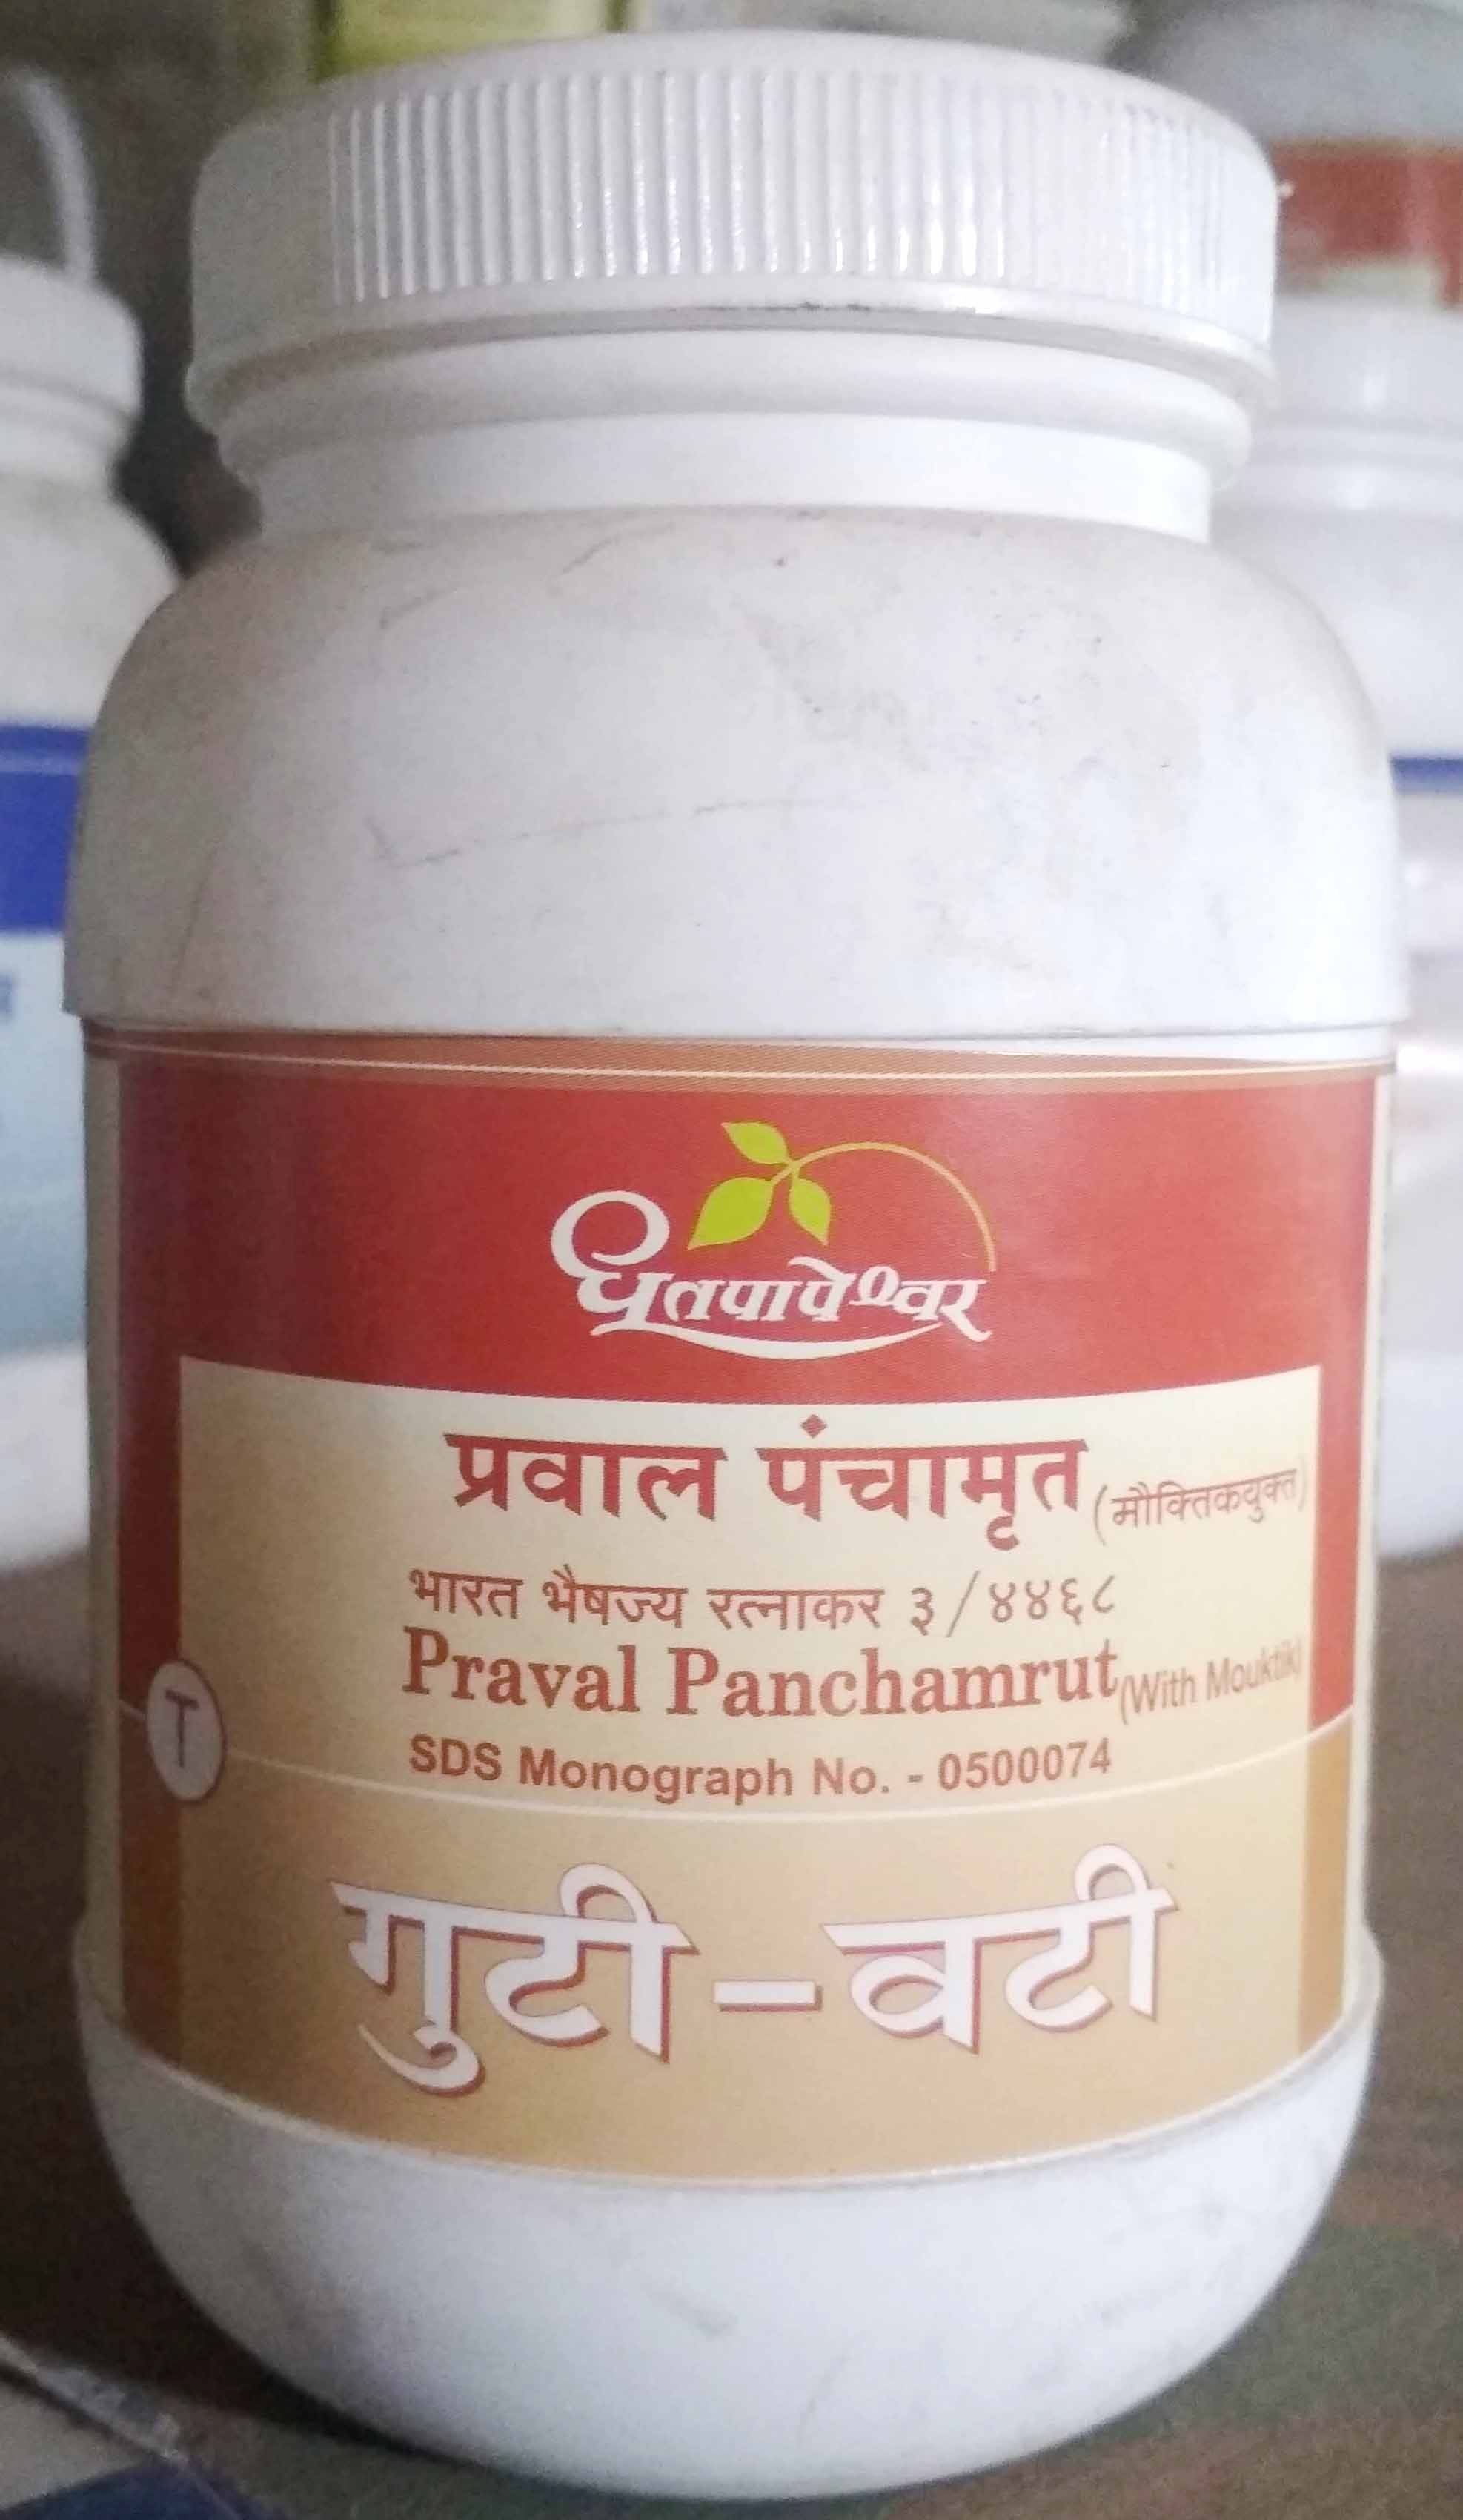 praval panchamrut with mouktik 10tab upto 20% off Shree Dhootpapeshwar Panvel